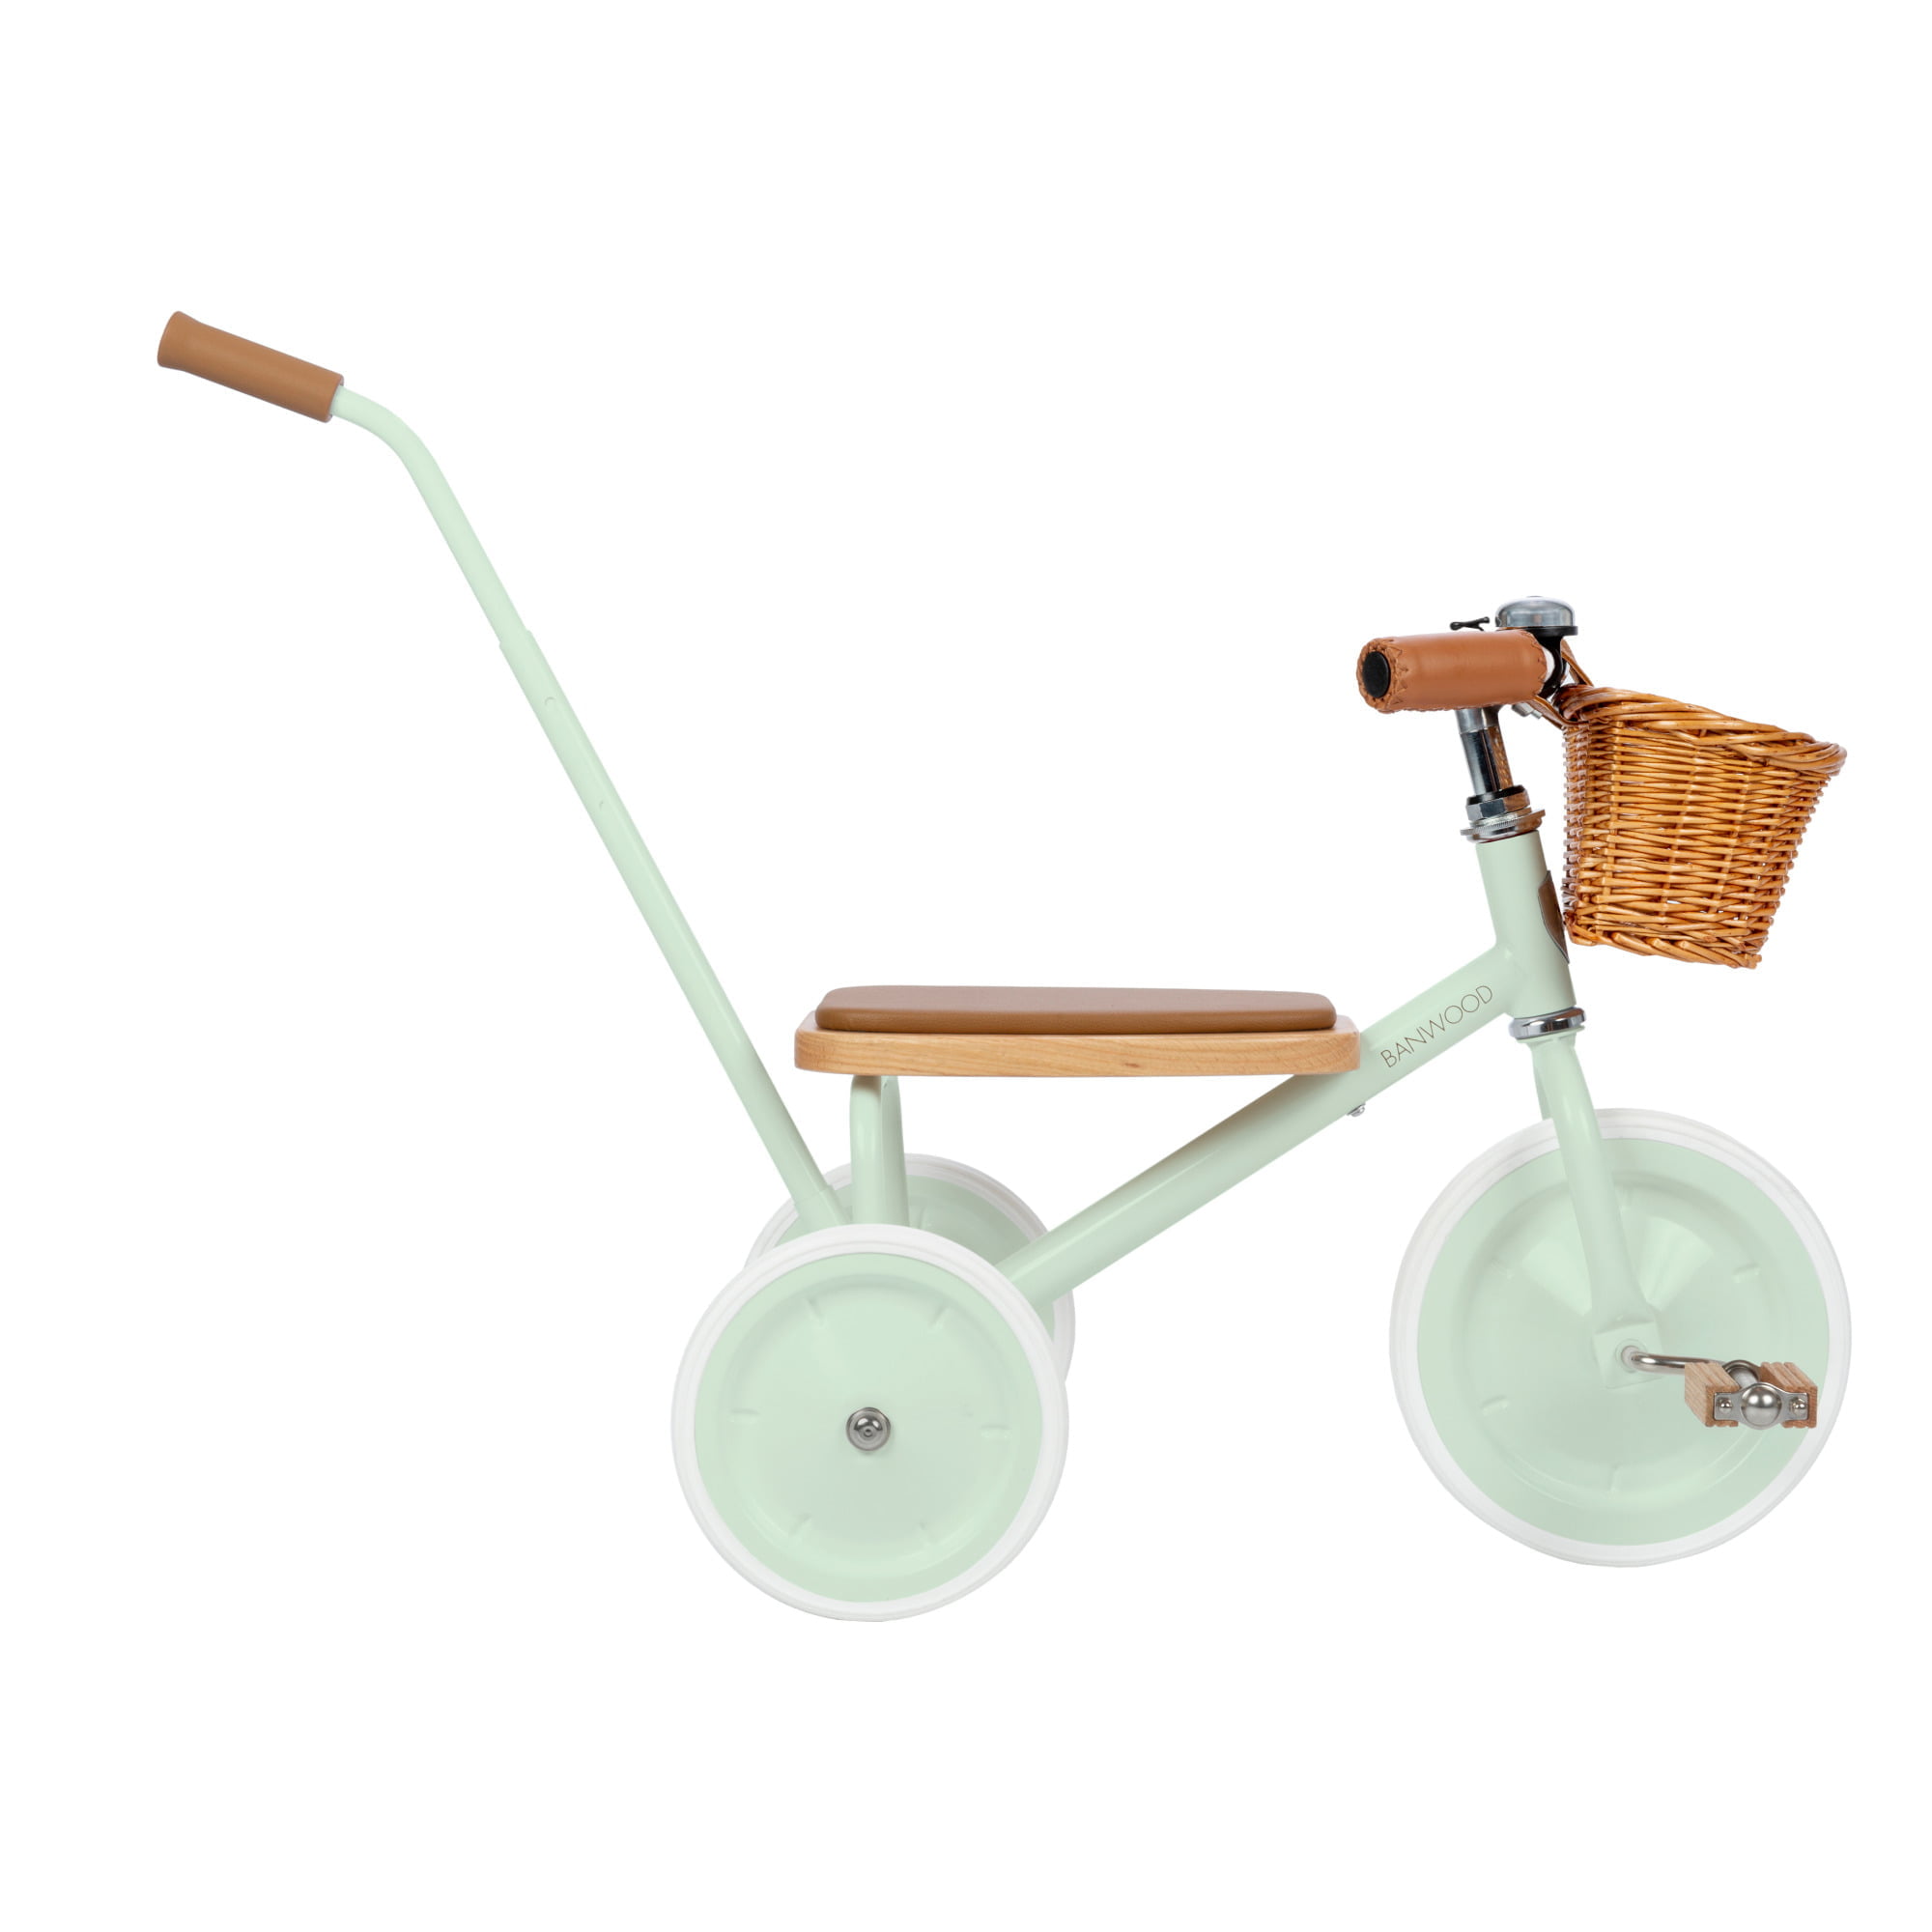 banwood-triciclo-mint-